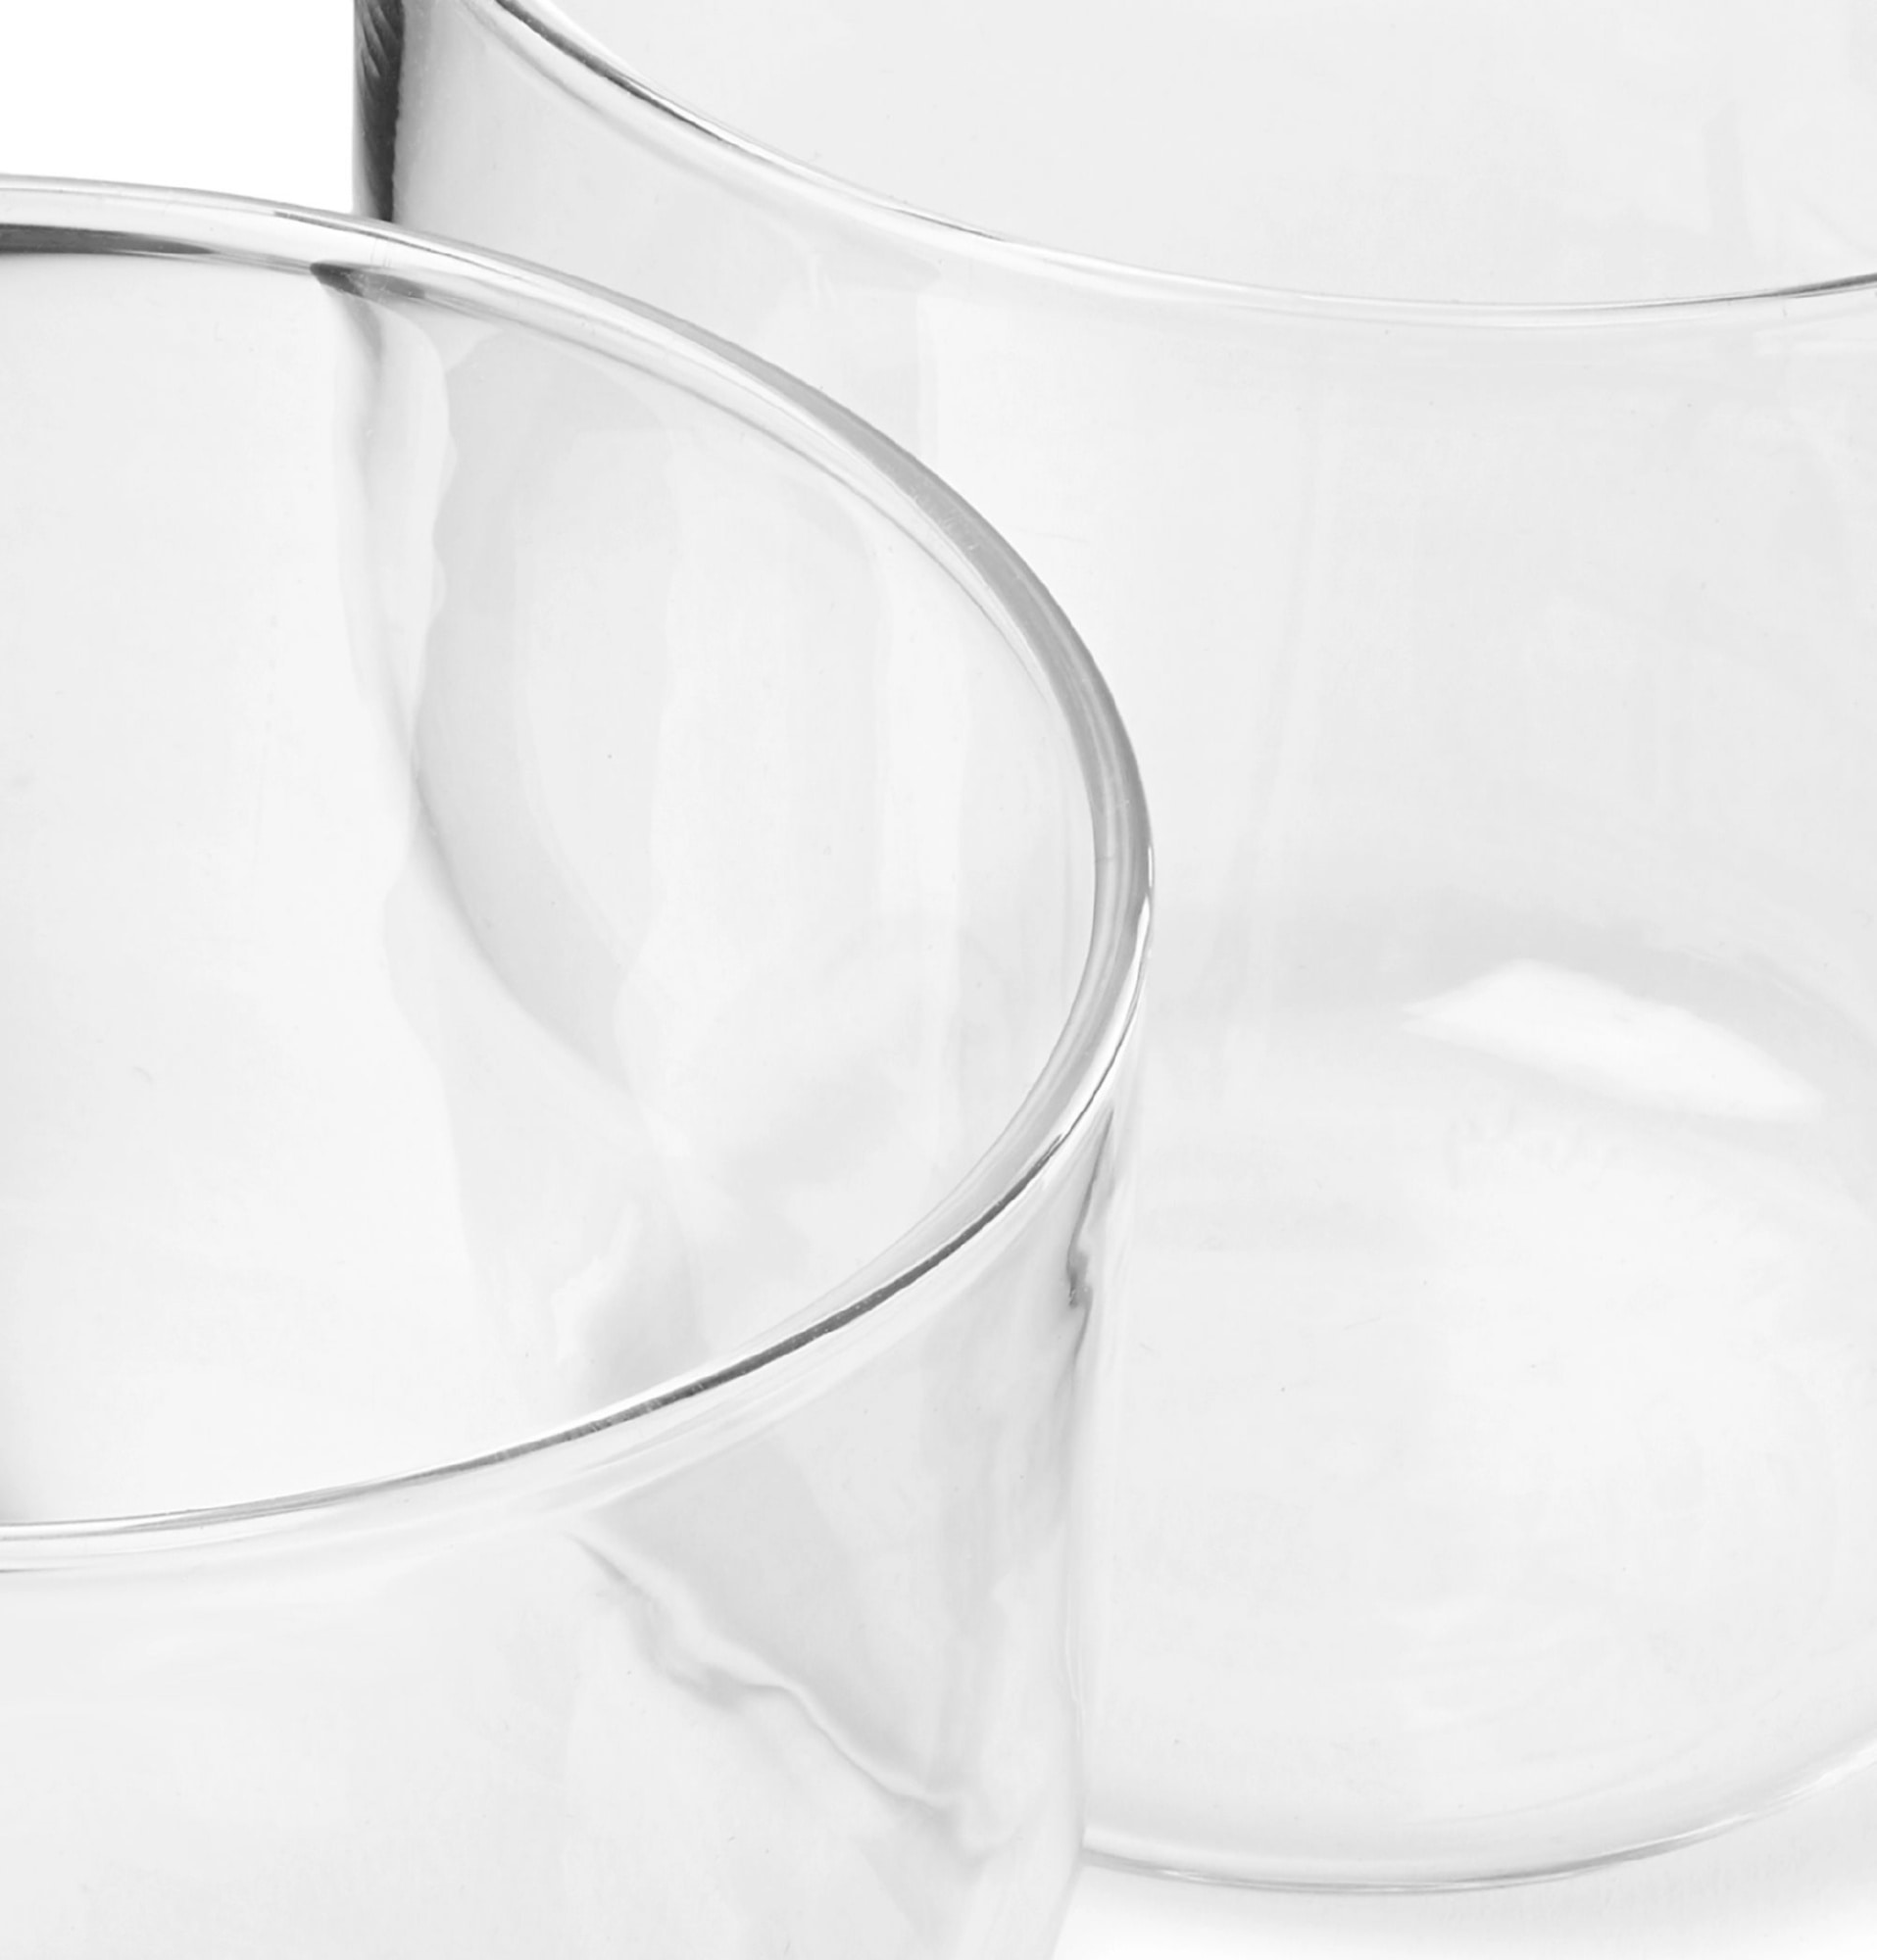 helg-carafe-and-glasses-set-34480784411999658